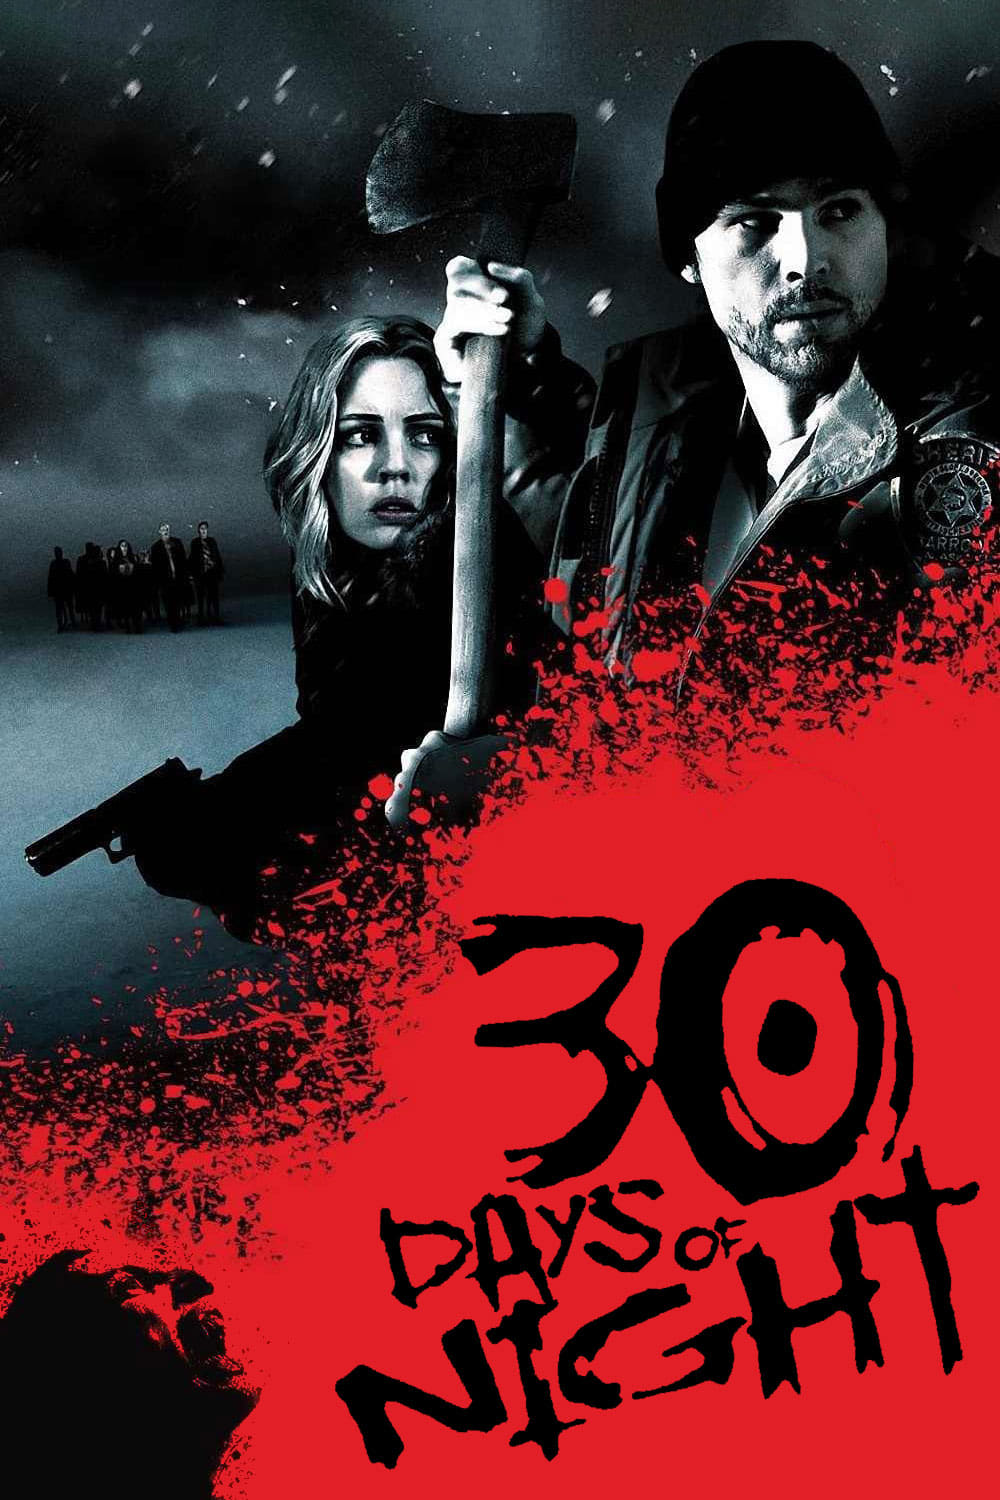 30 Dias de Noite (2007)